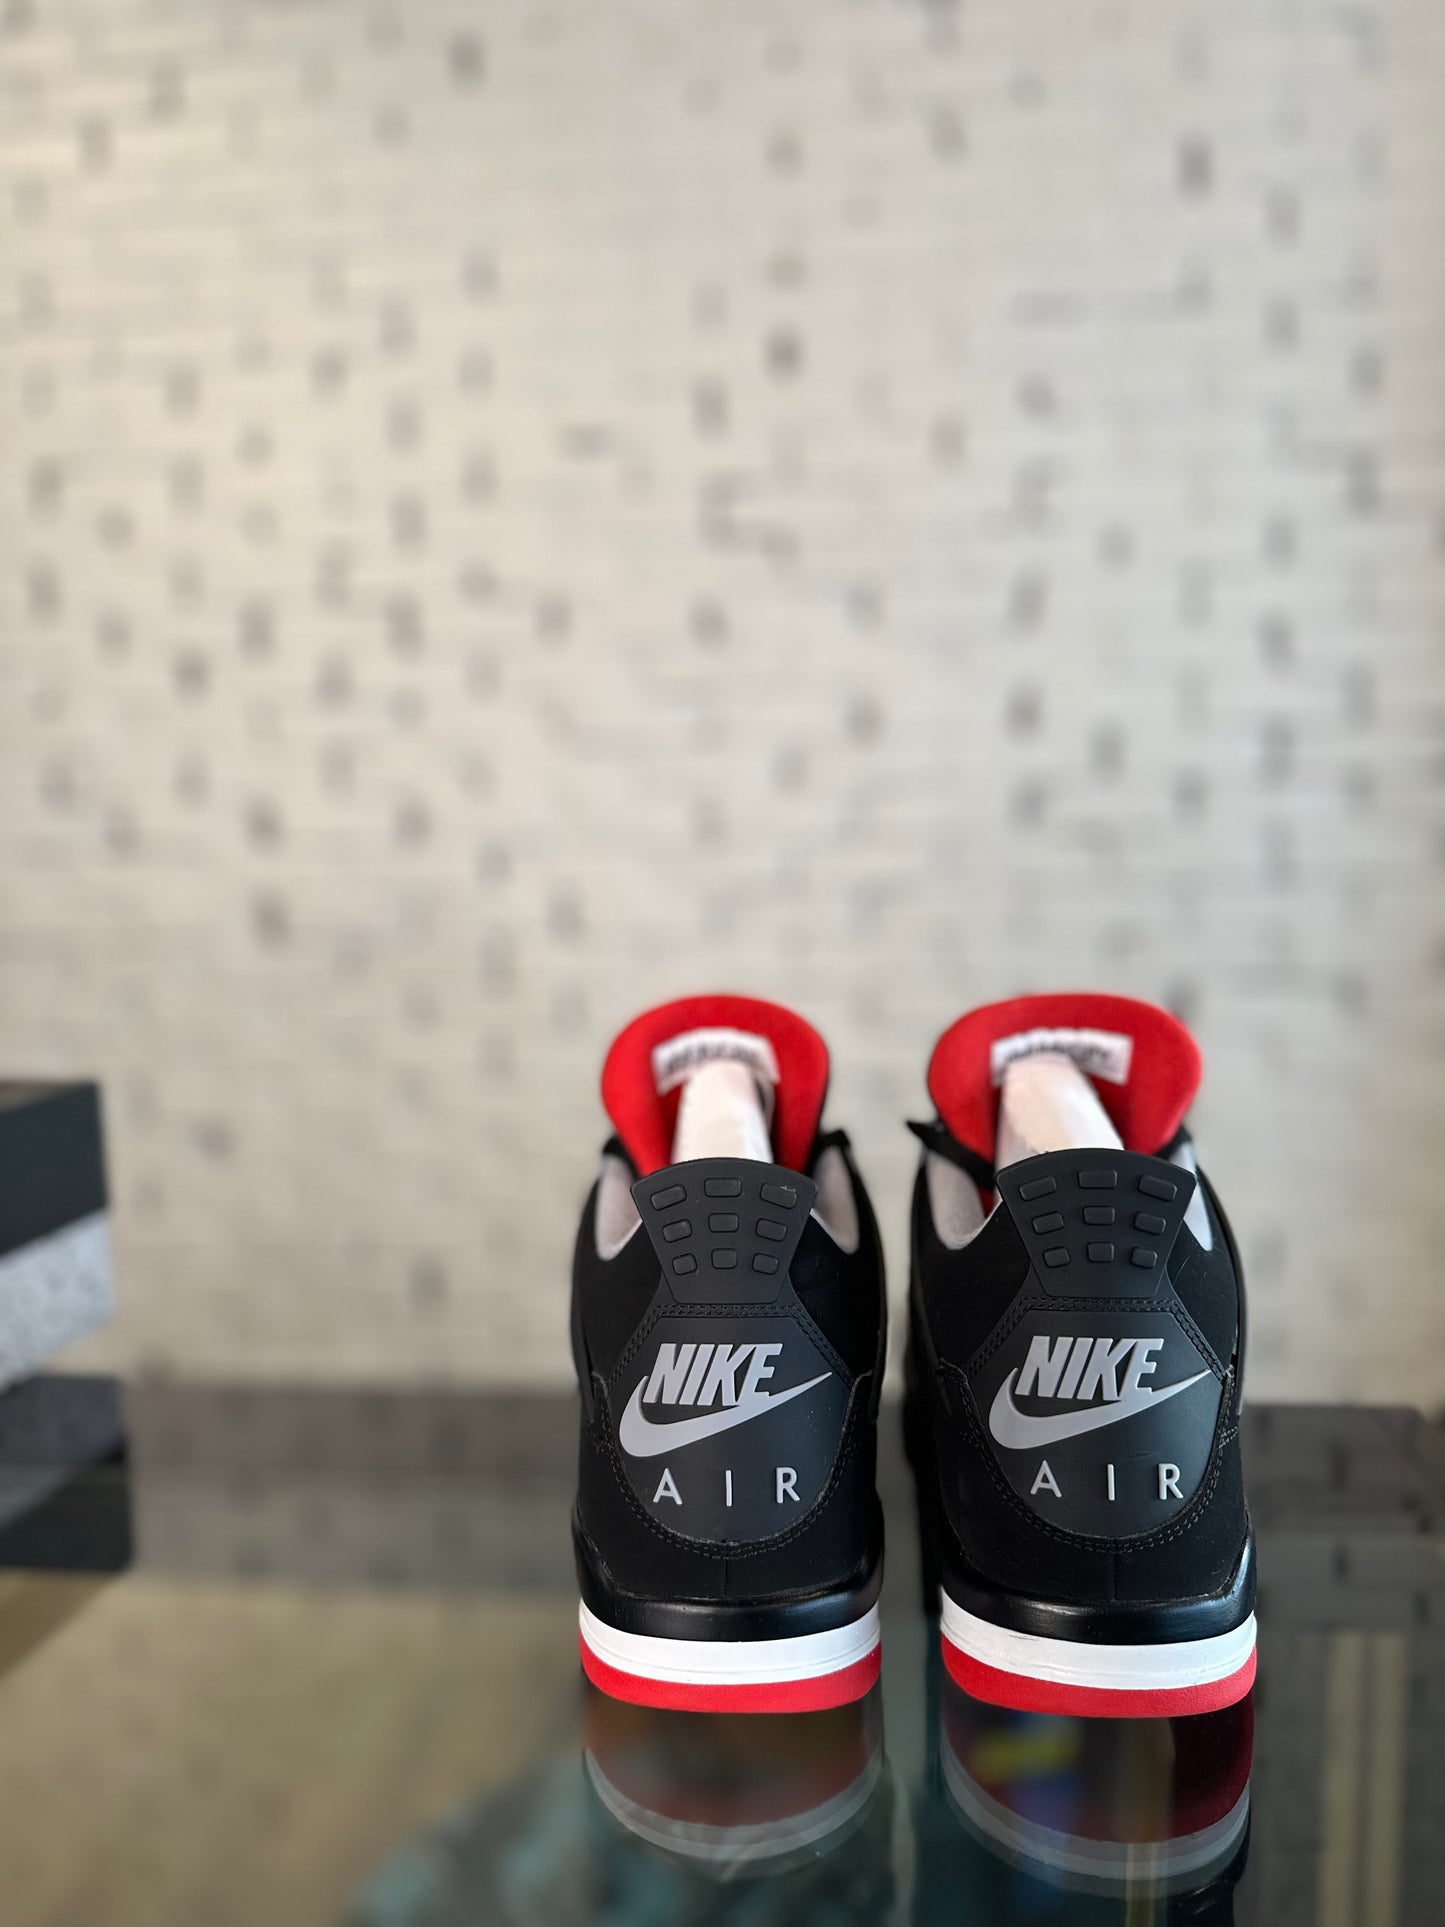 Air Jordan 4 Retro OG (2019) “Bred” Size 10 CLEAN OG